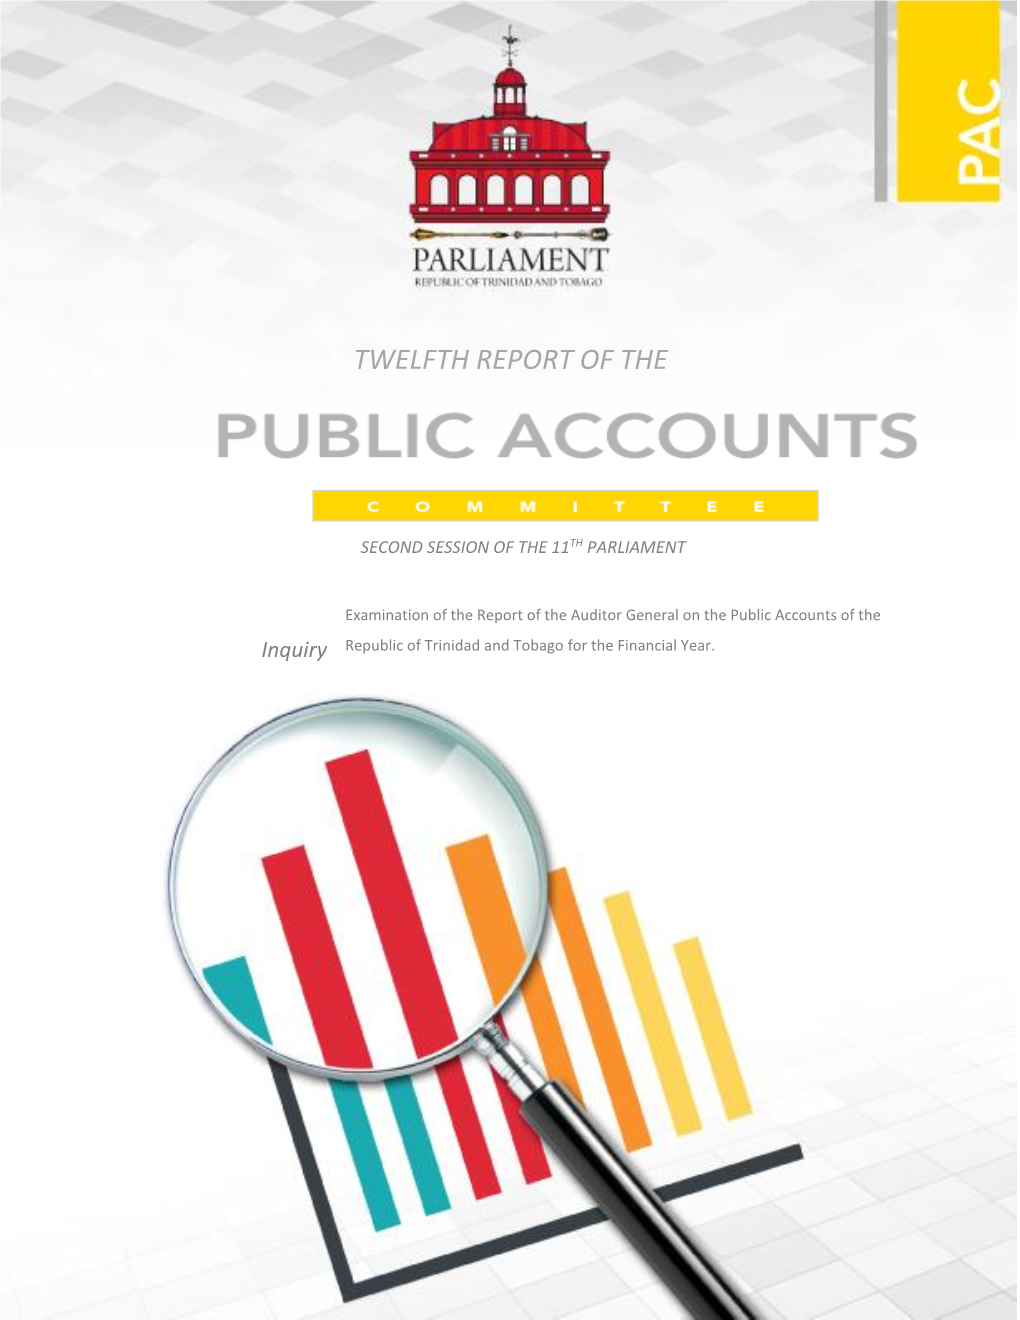 Twelfth Report of the Public Accounts Committee on the Examination of the Report of the Auditor